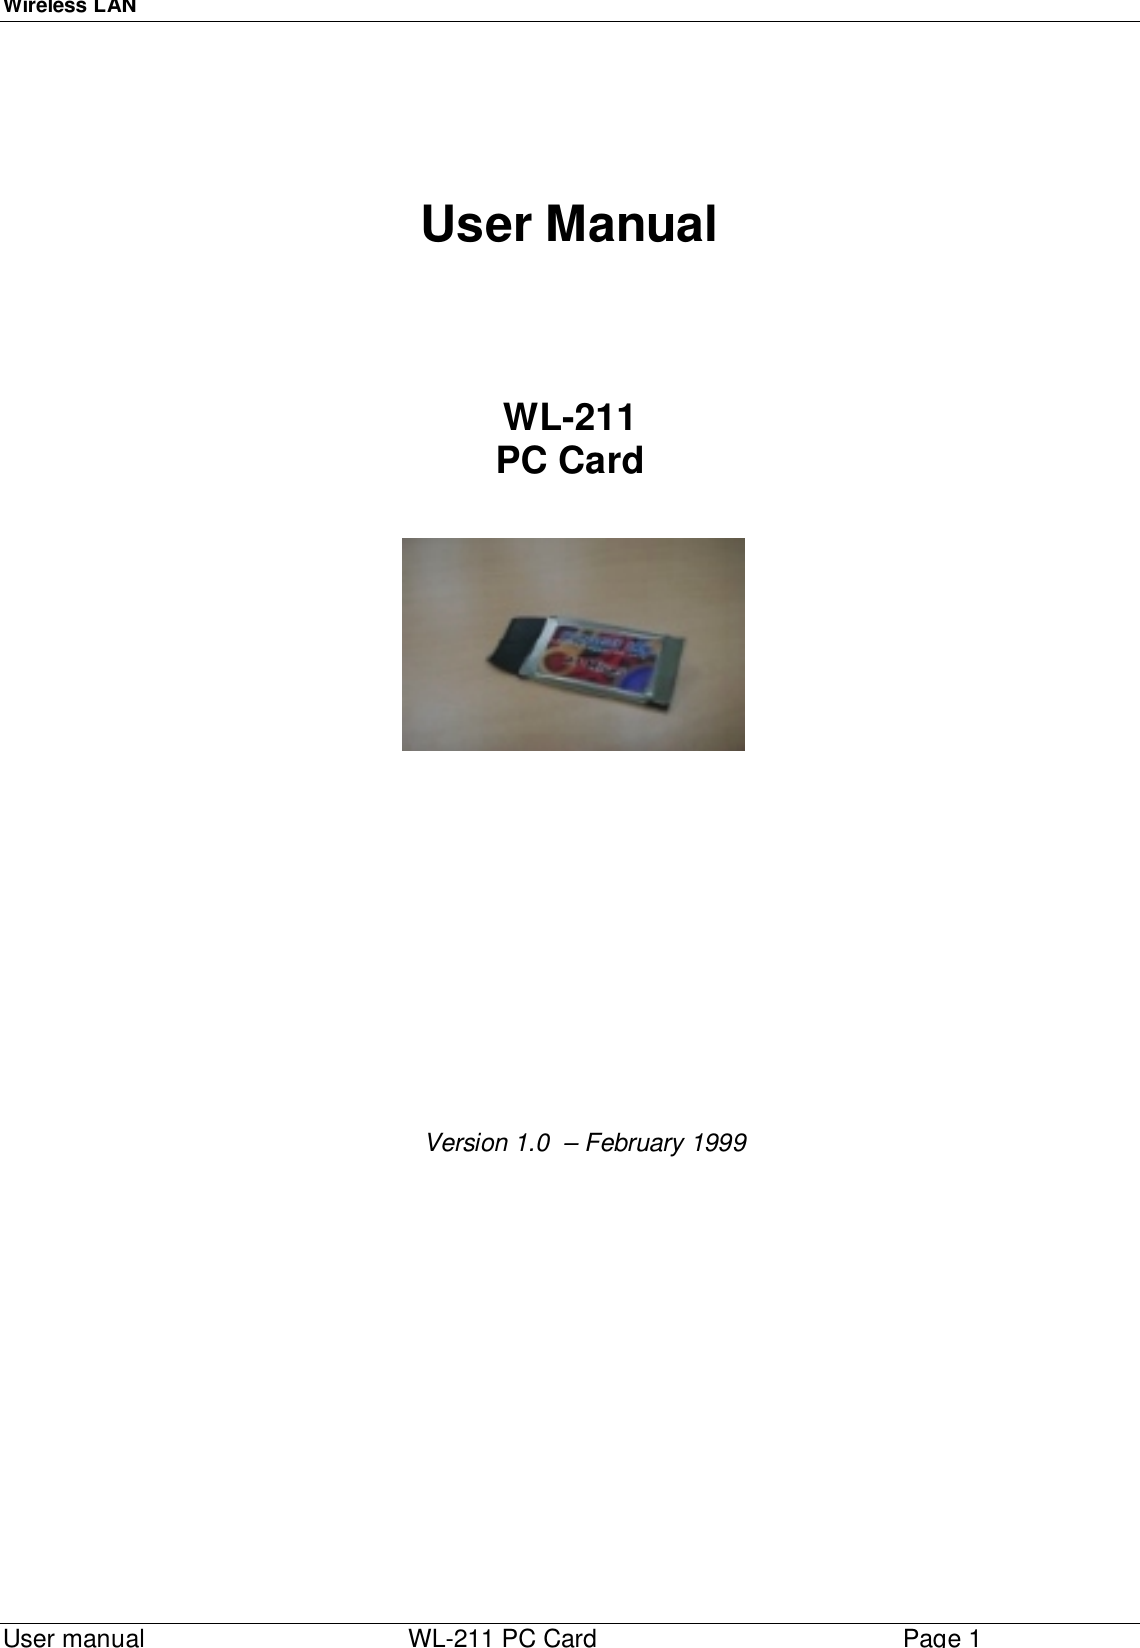 Wireless LAN  User manual    WL-211 PC CardPage 1User ManualWL-211PC Card    Version 1.0  – February 1999